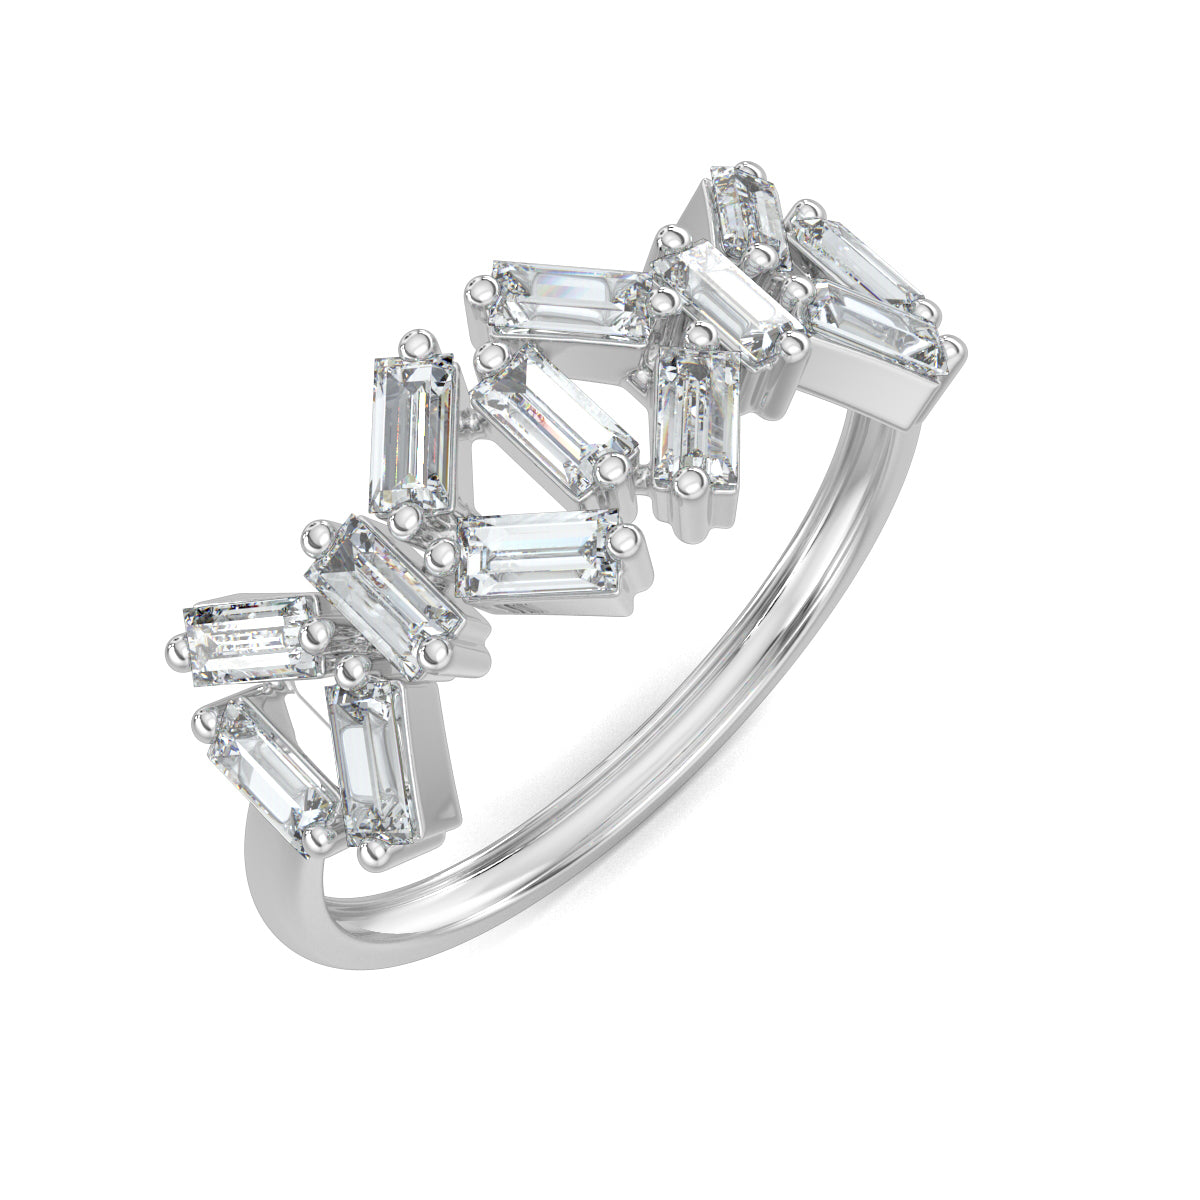 White Gold, Diamond Ring, Natural diamond ring, Lab-grown diamond ring, baguette diamond ring, everyday diamond ring, classic band diamond ring, elegant diamond ring, timeless diamond jewelry.